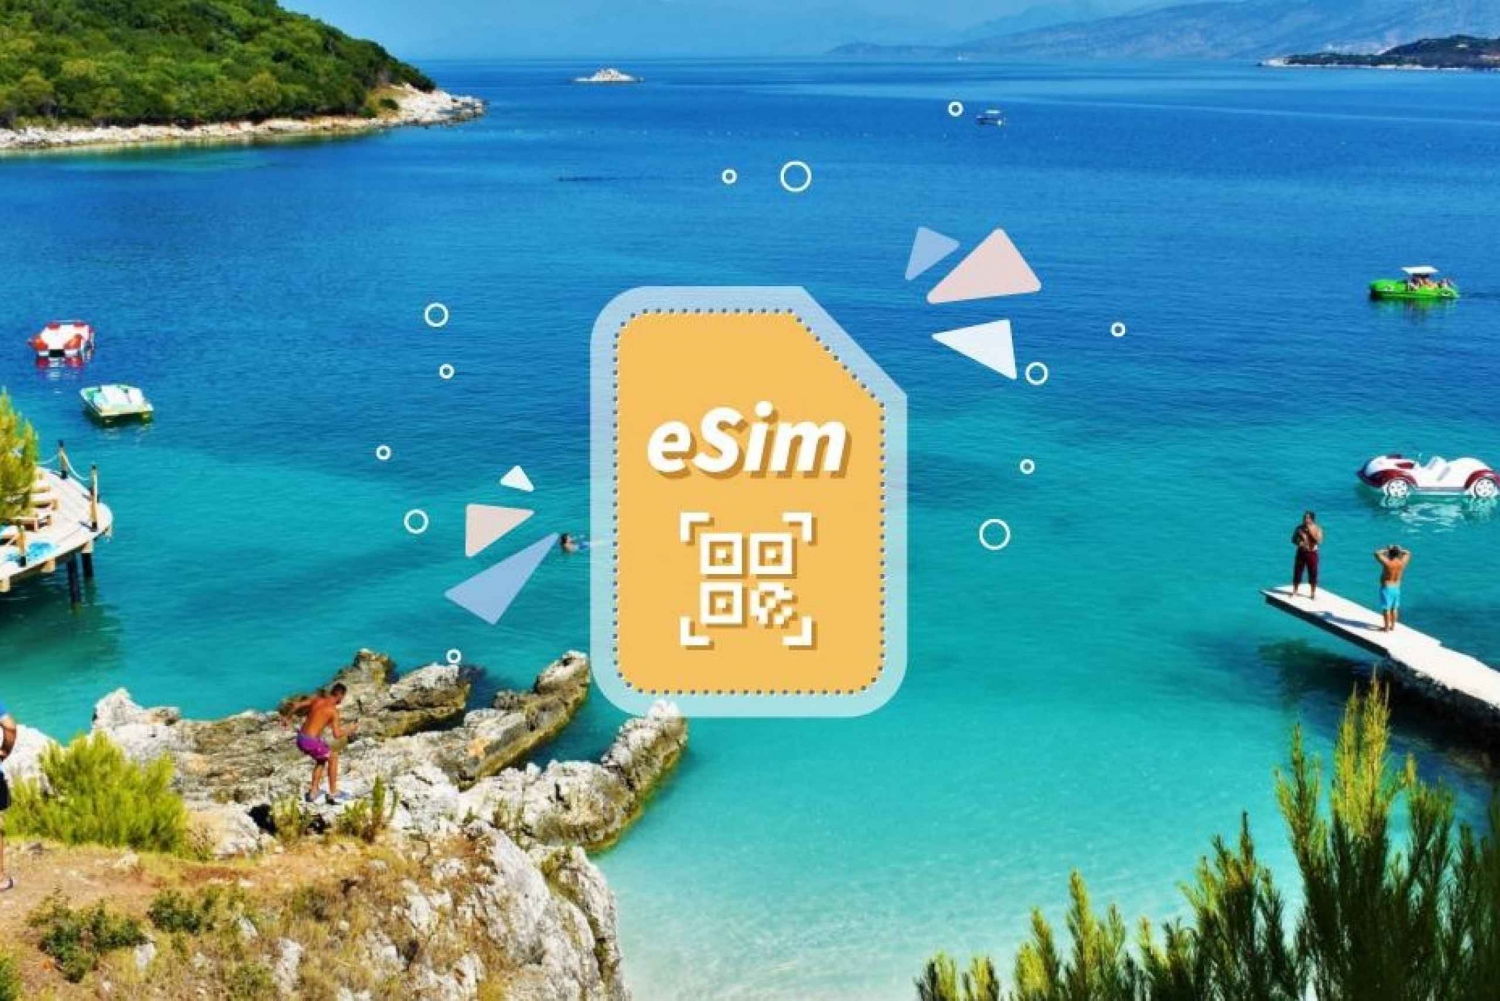 Albanië/Europa: eSim mobiel dataplan